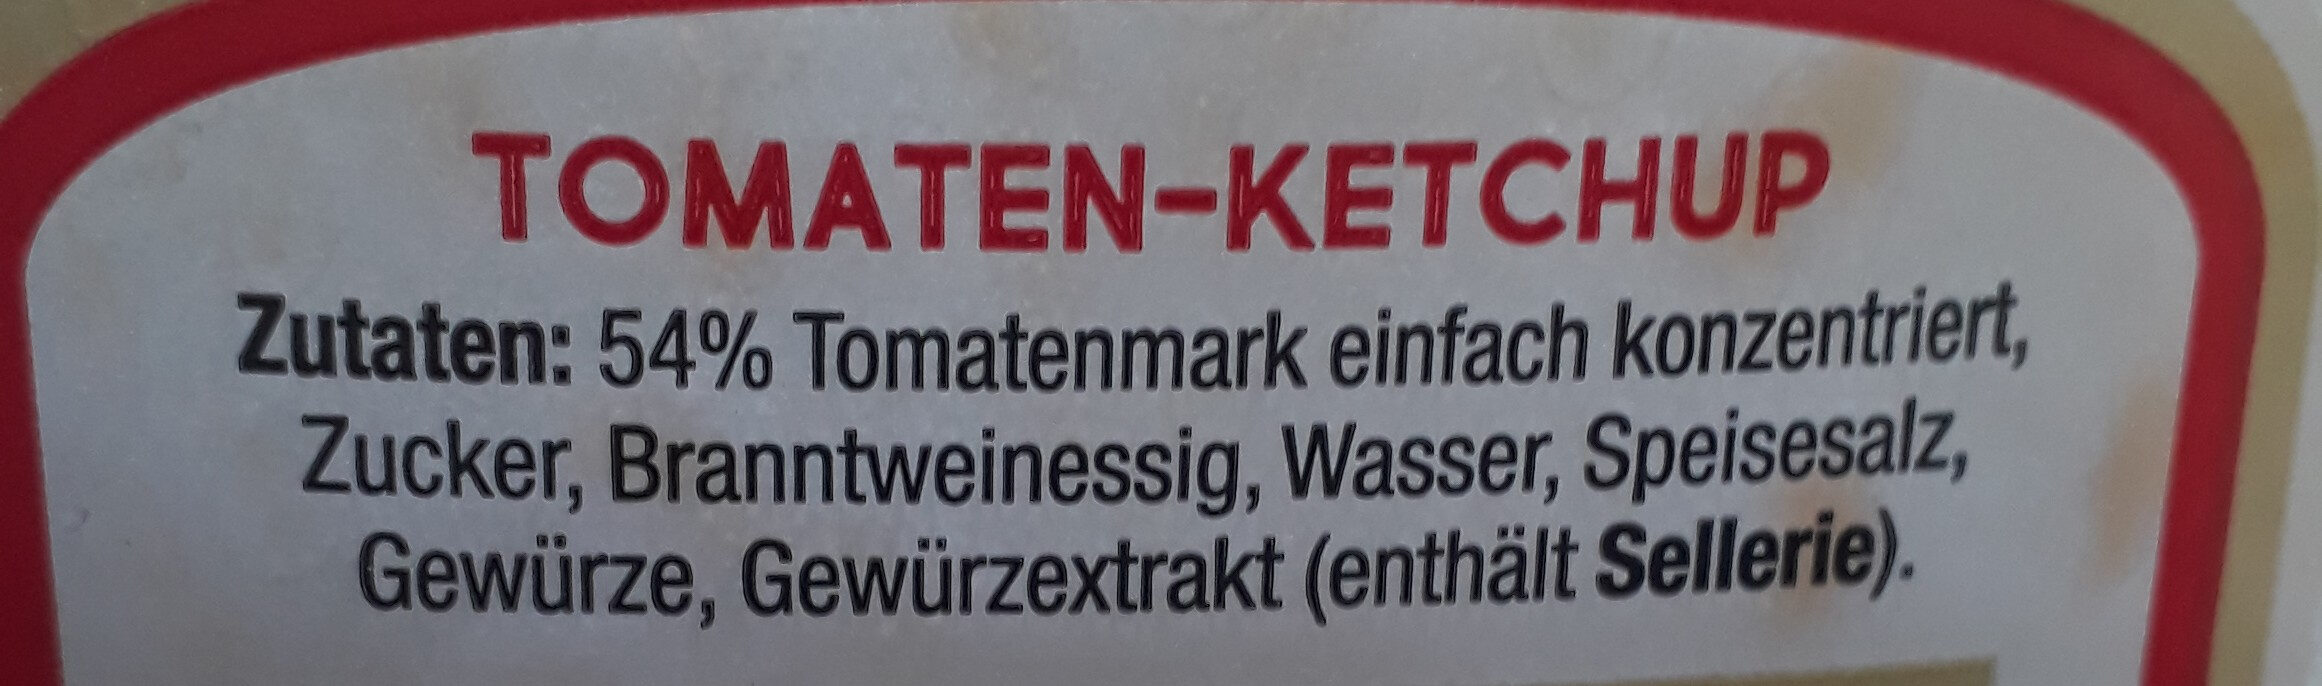 Tomaten Ketchup - Ingredients - de